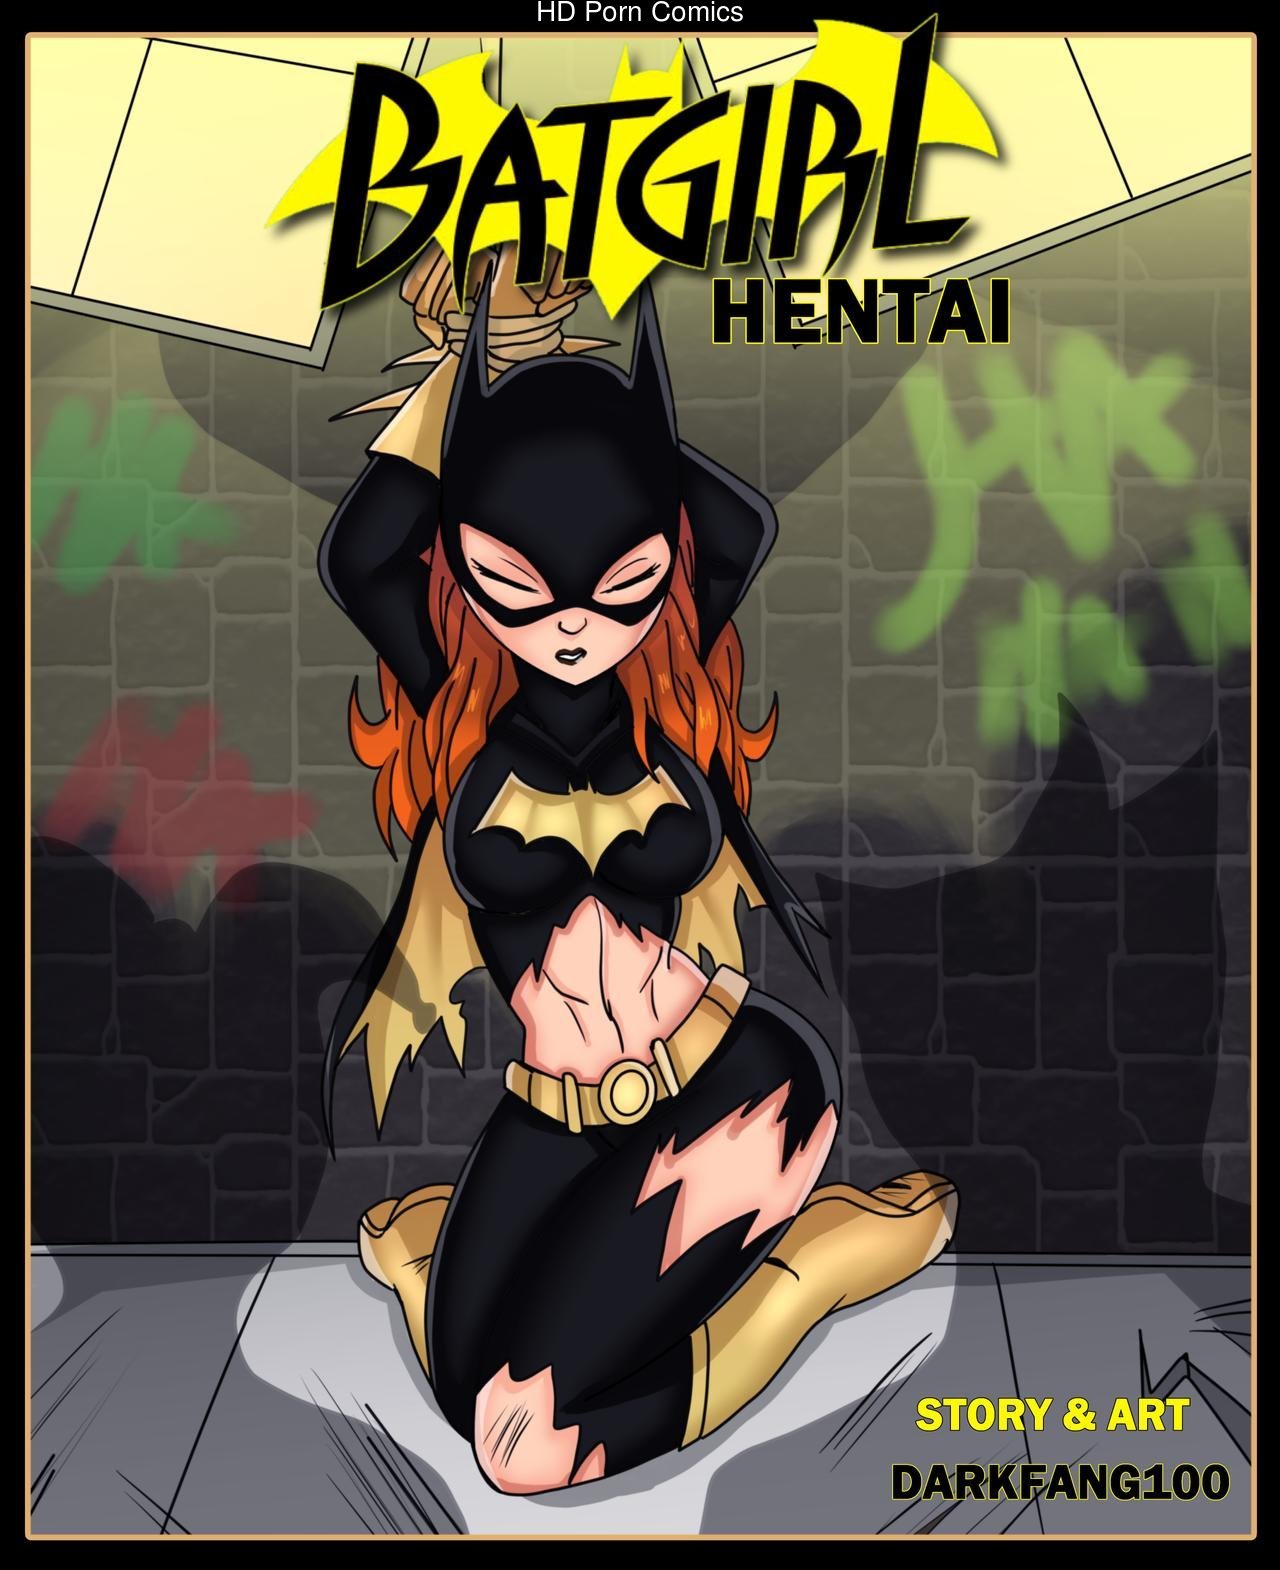 Batgirl Porn Comic Story - Batgirl Hentai Comic comic porn - HD Porn Comics